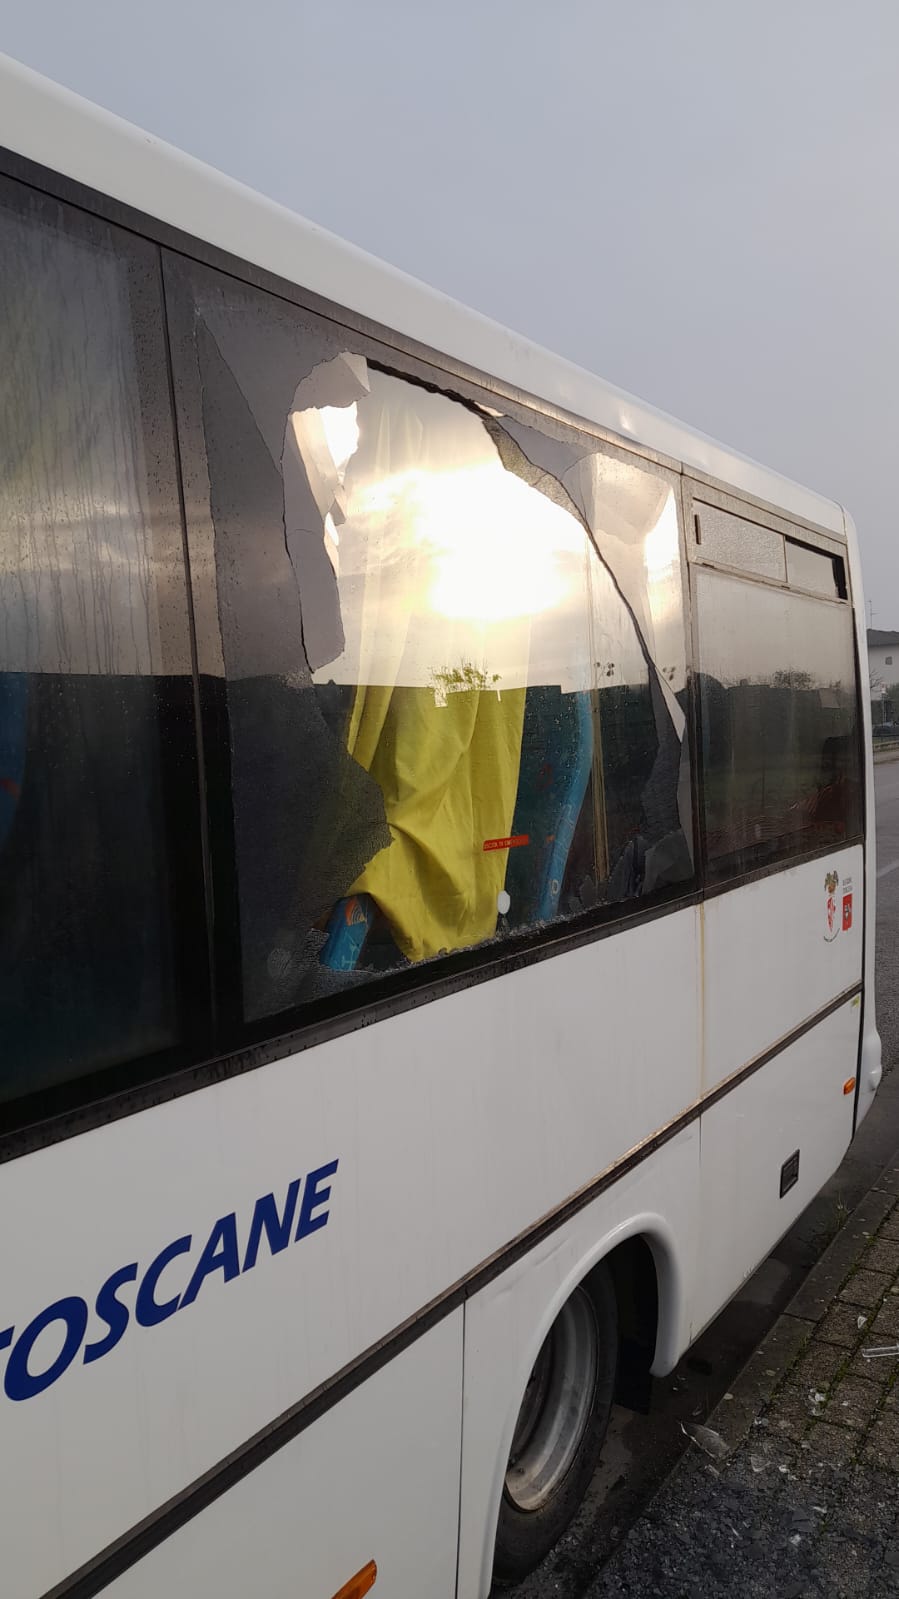 Il bus con il vetro rotto (Fonte foto Autolinee Toscane)